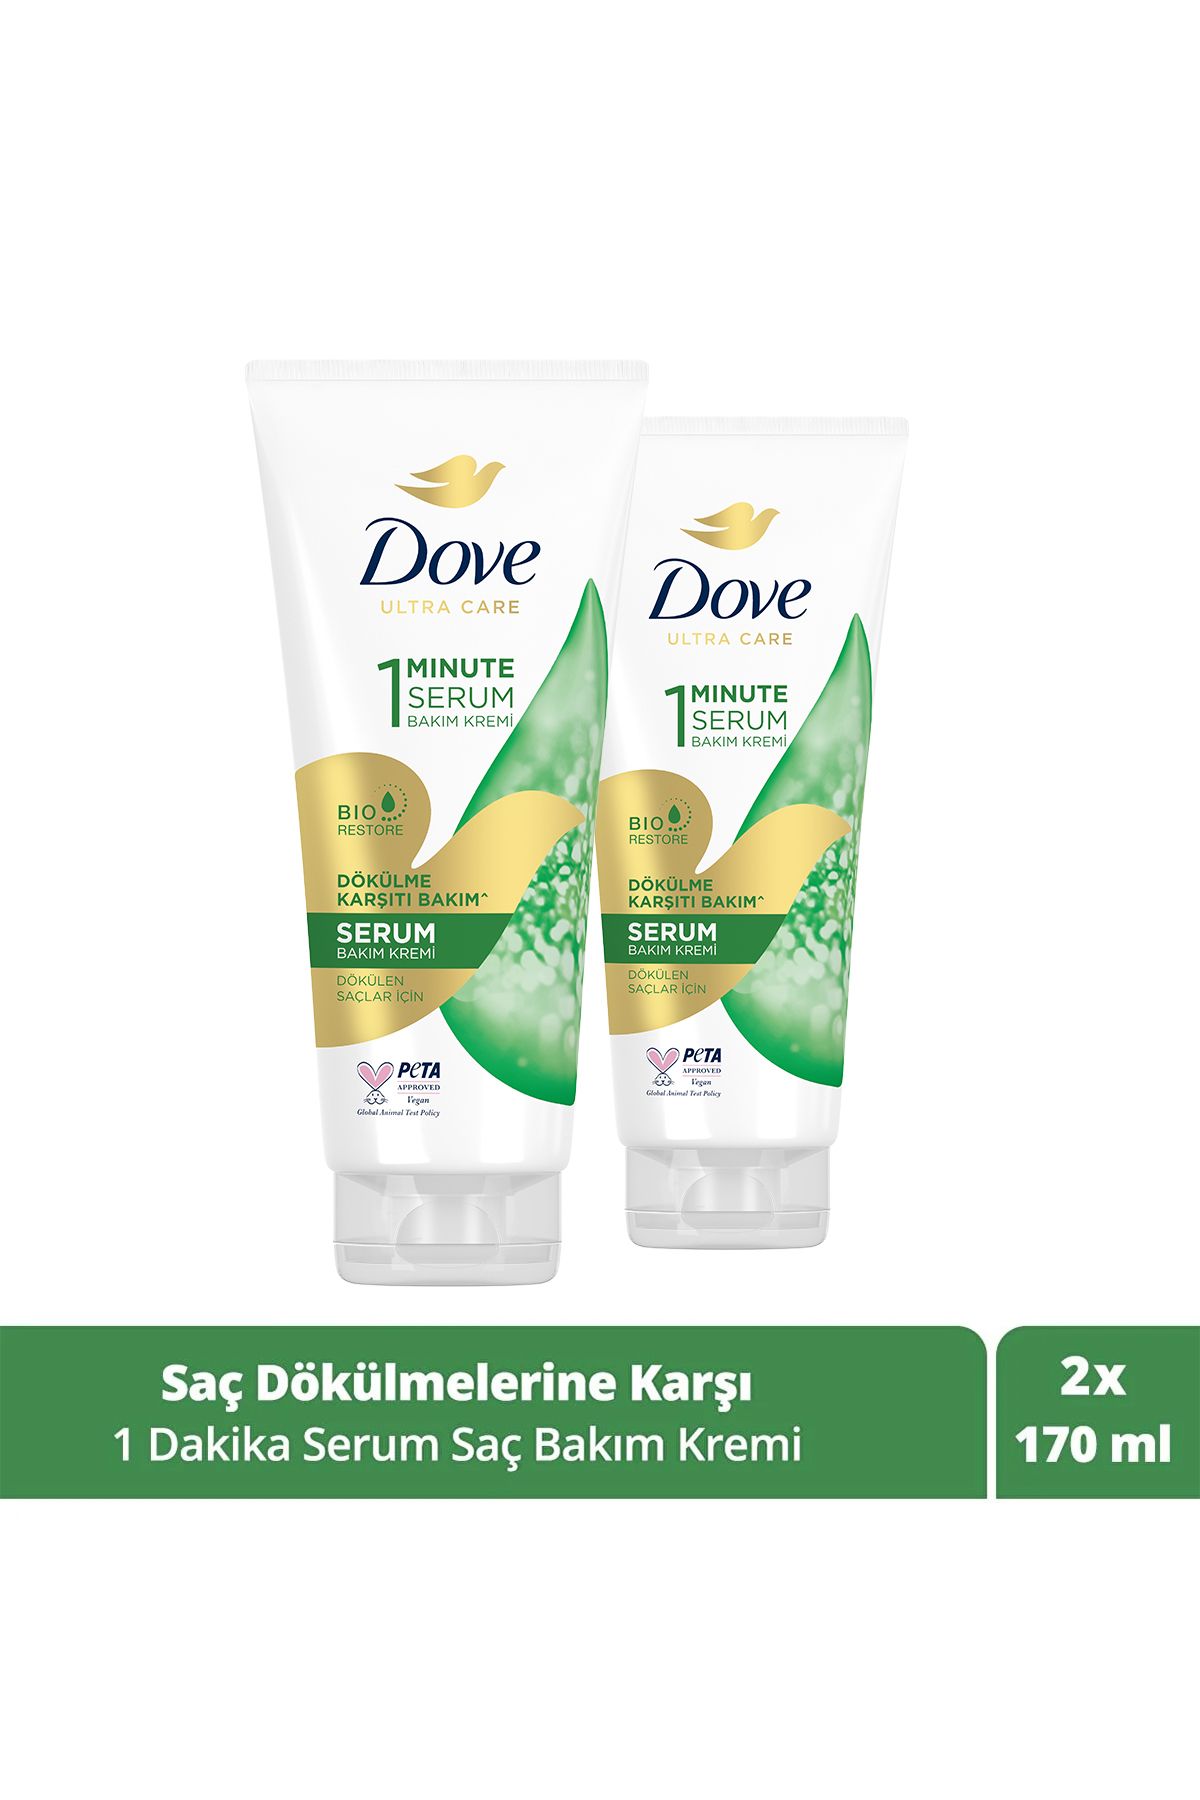 Dove Ultra Care 1 Minute Serum Saç Bakım Kremi Dökülme Karşıtı Bakım 170 ml X2